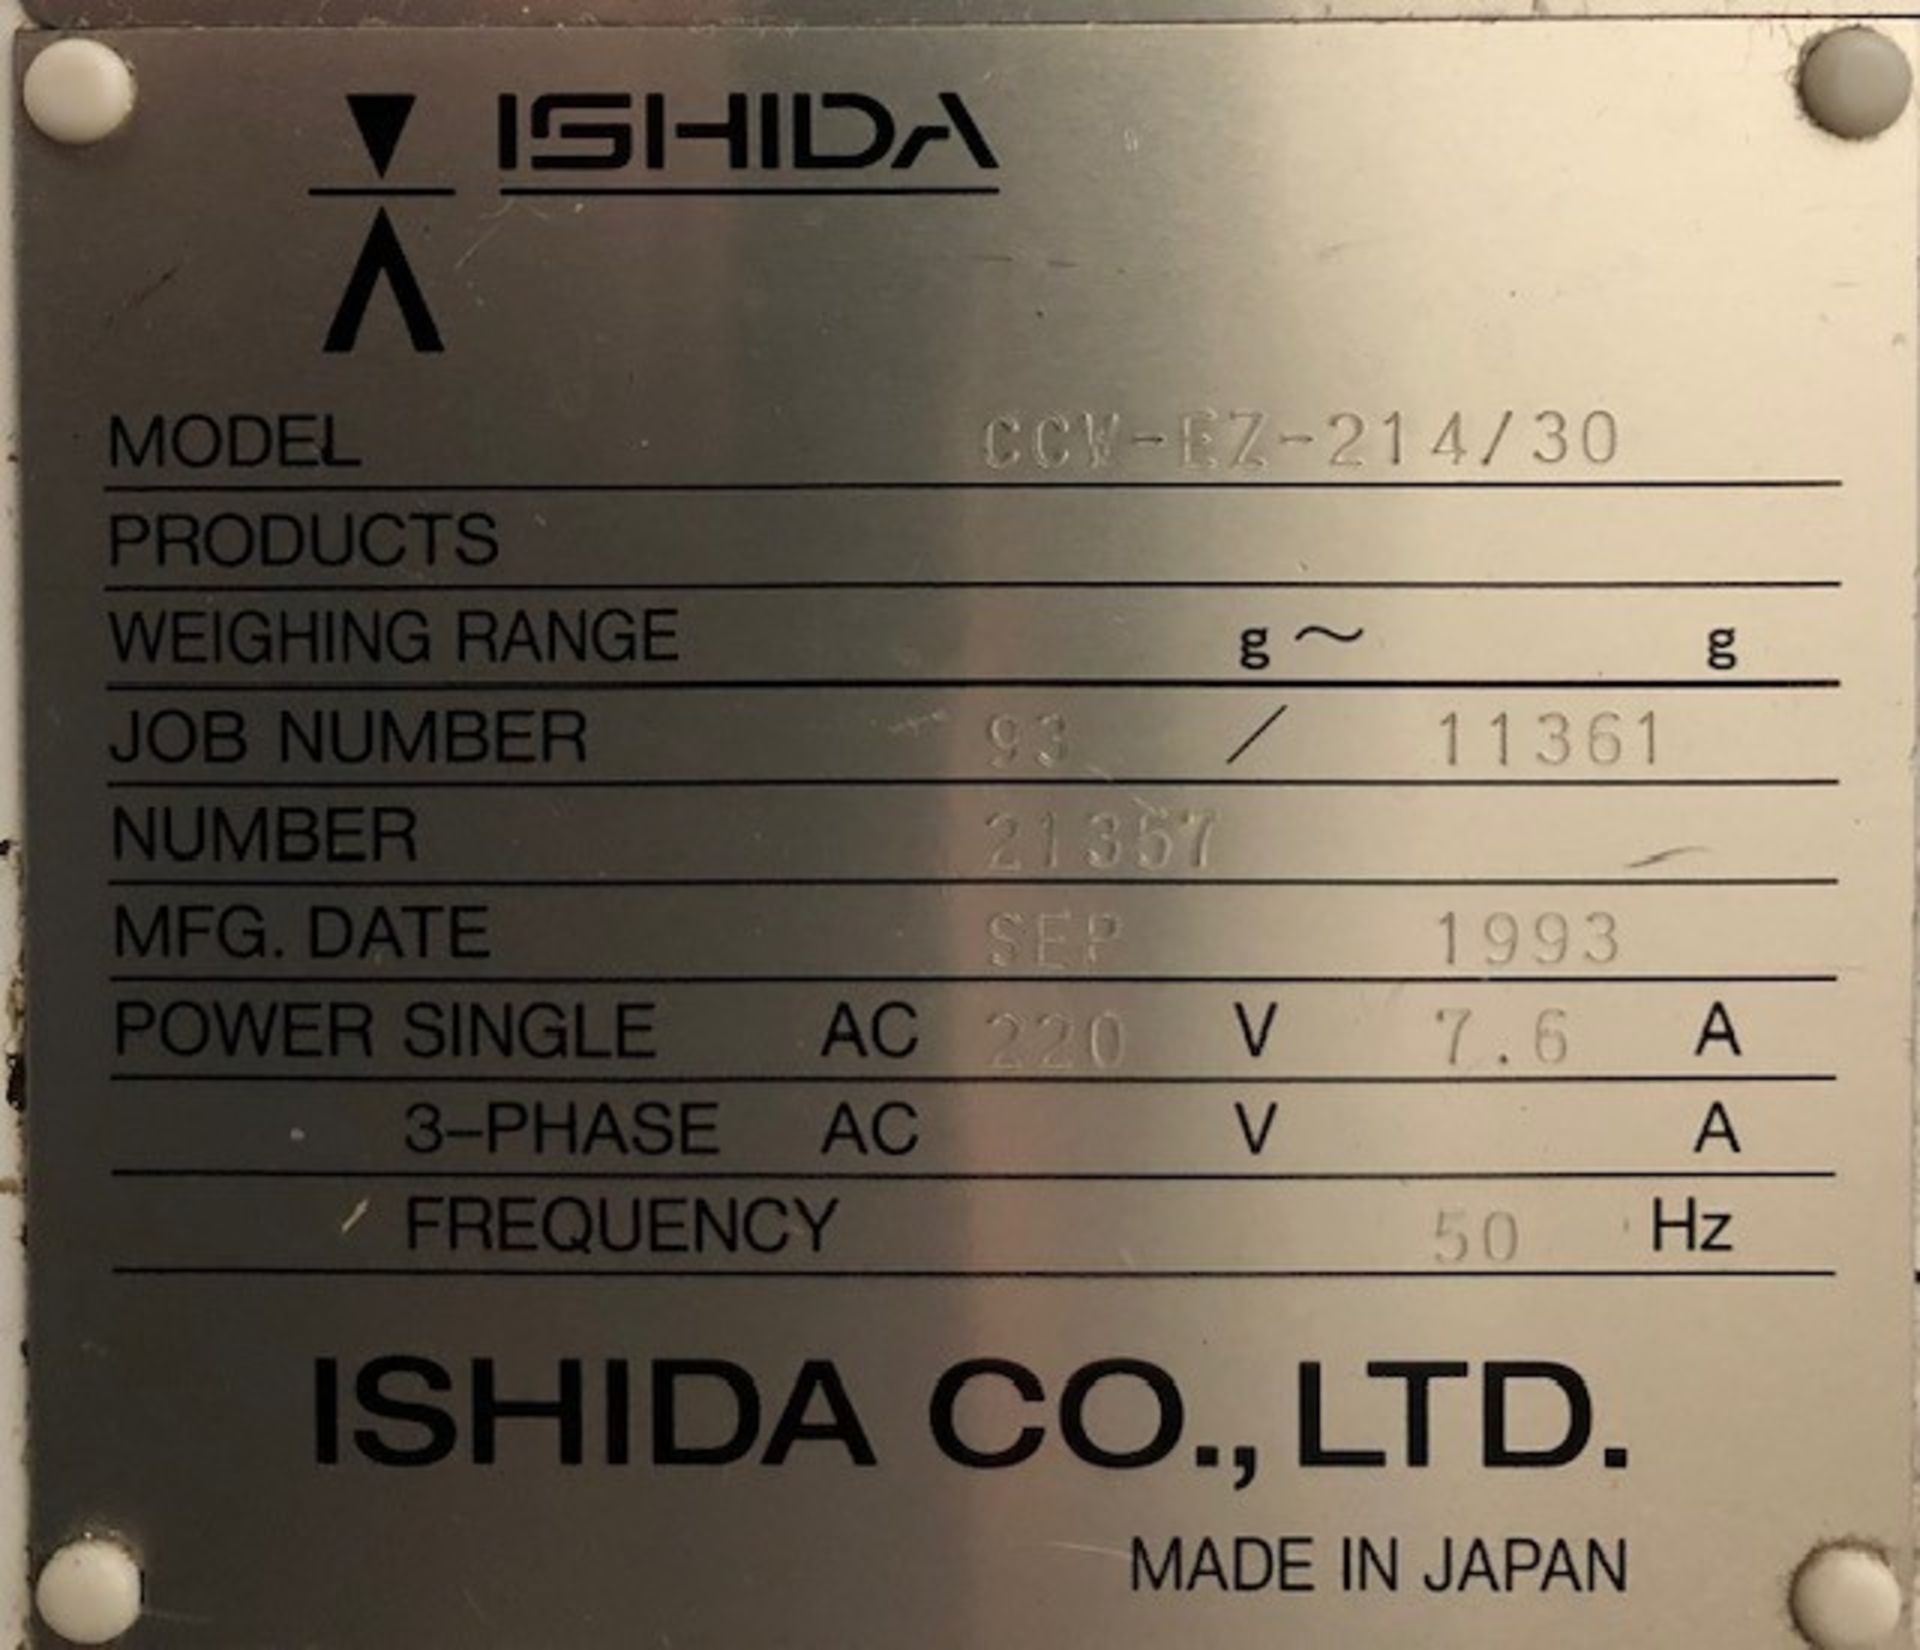 Ishida CCW-EZ-214/3014-head multihead weigher - Image 7 of 10